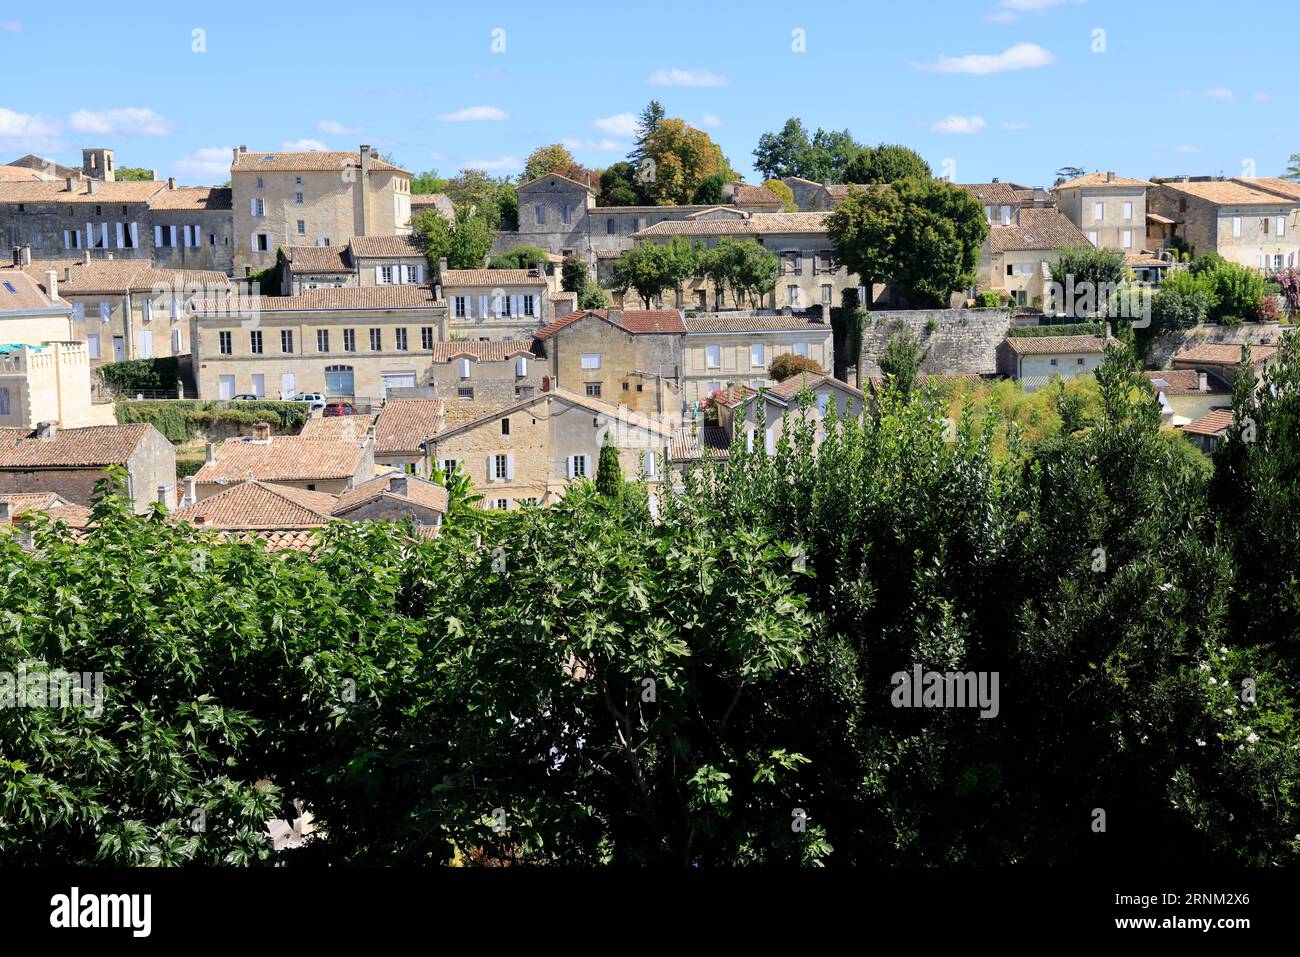 Saint-Emilion. Figuiers et figues dans le Village de Saint-Emilion classé parmi les plus beaux Villages de France. Saint-Emilion, Gironde, Frankreich, Eur Stockfoto